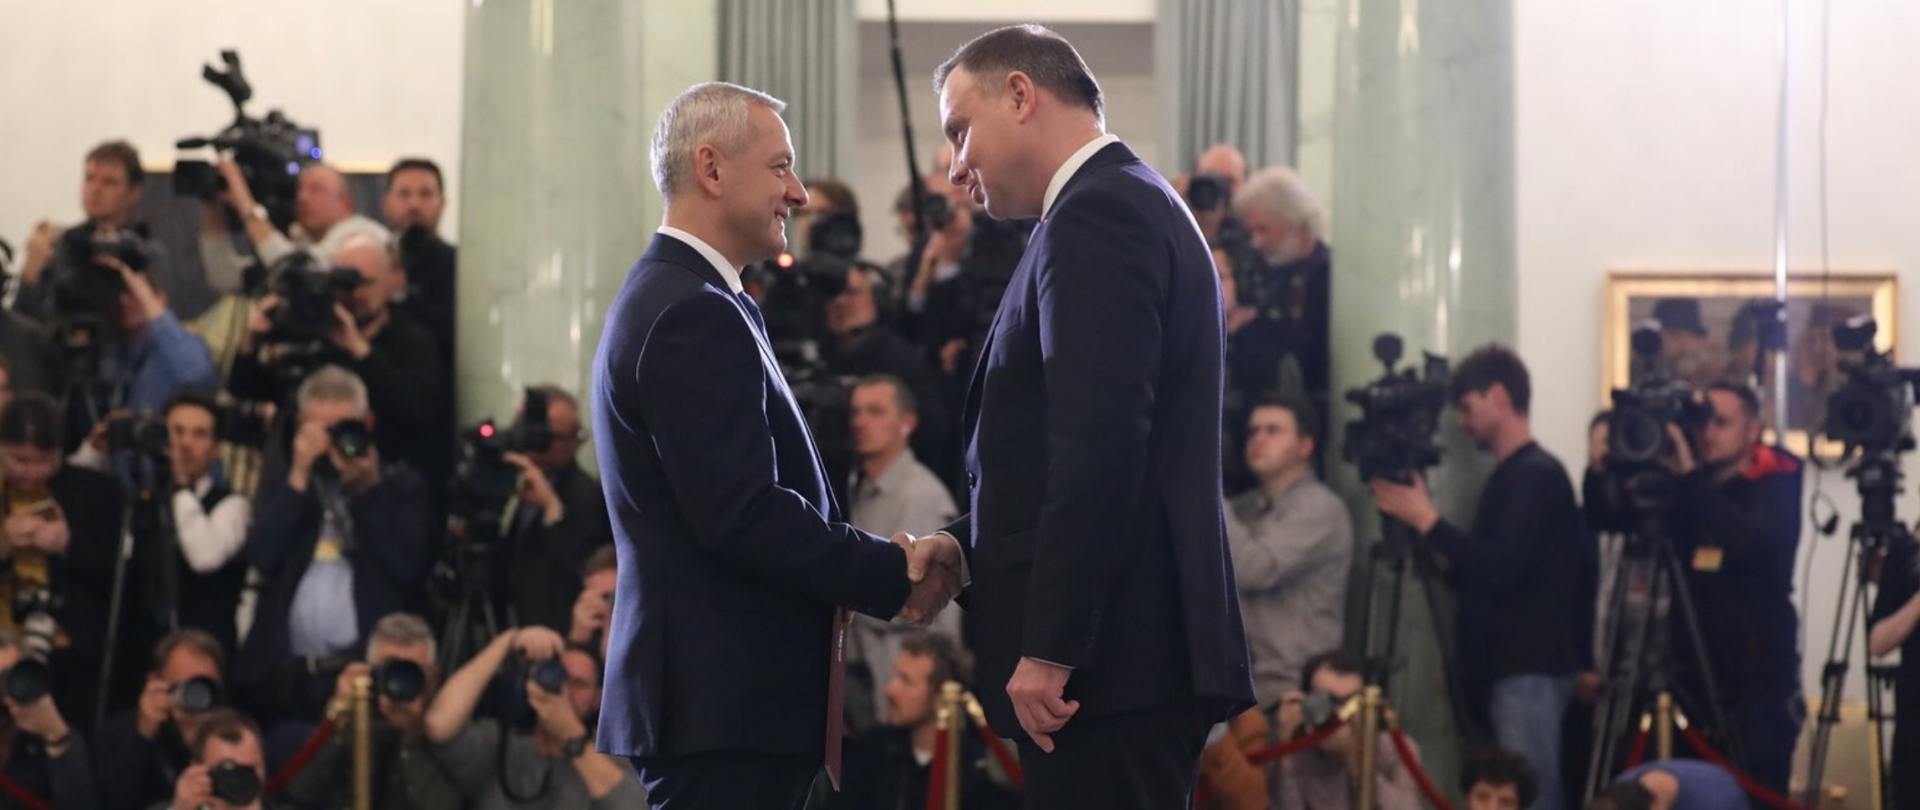 Minister Marek Zagórski i prezydent Andrzej Duda podają sobie ręce. W tle tłum przedstawicieli mediów.